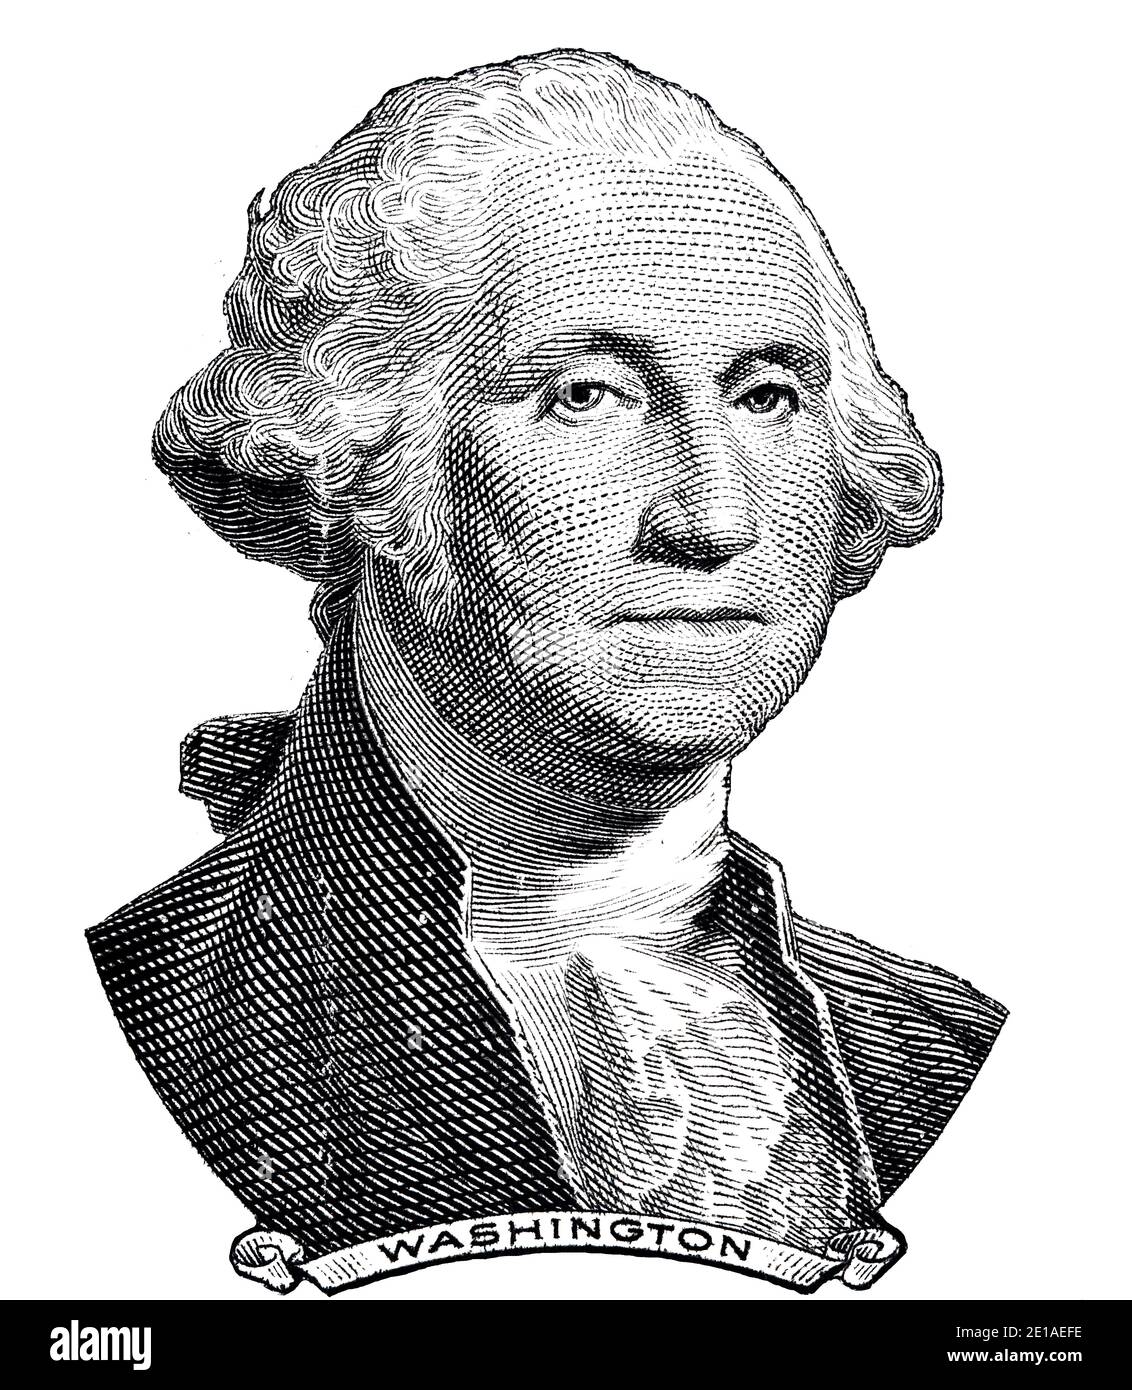 George Washington a coupé sur un billet de 1 dollar isolé sur fond blanc à des fins de conception Banque D'Images